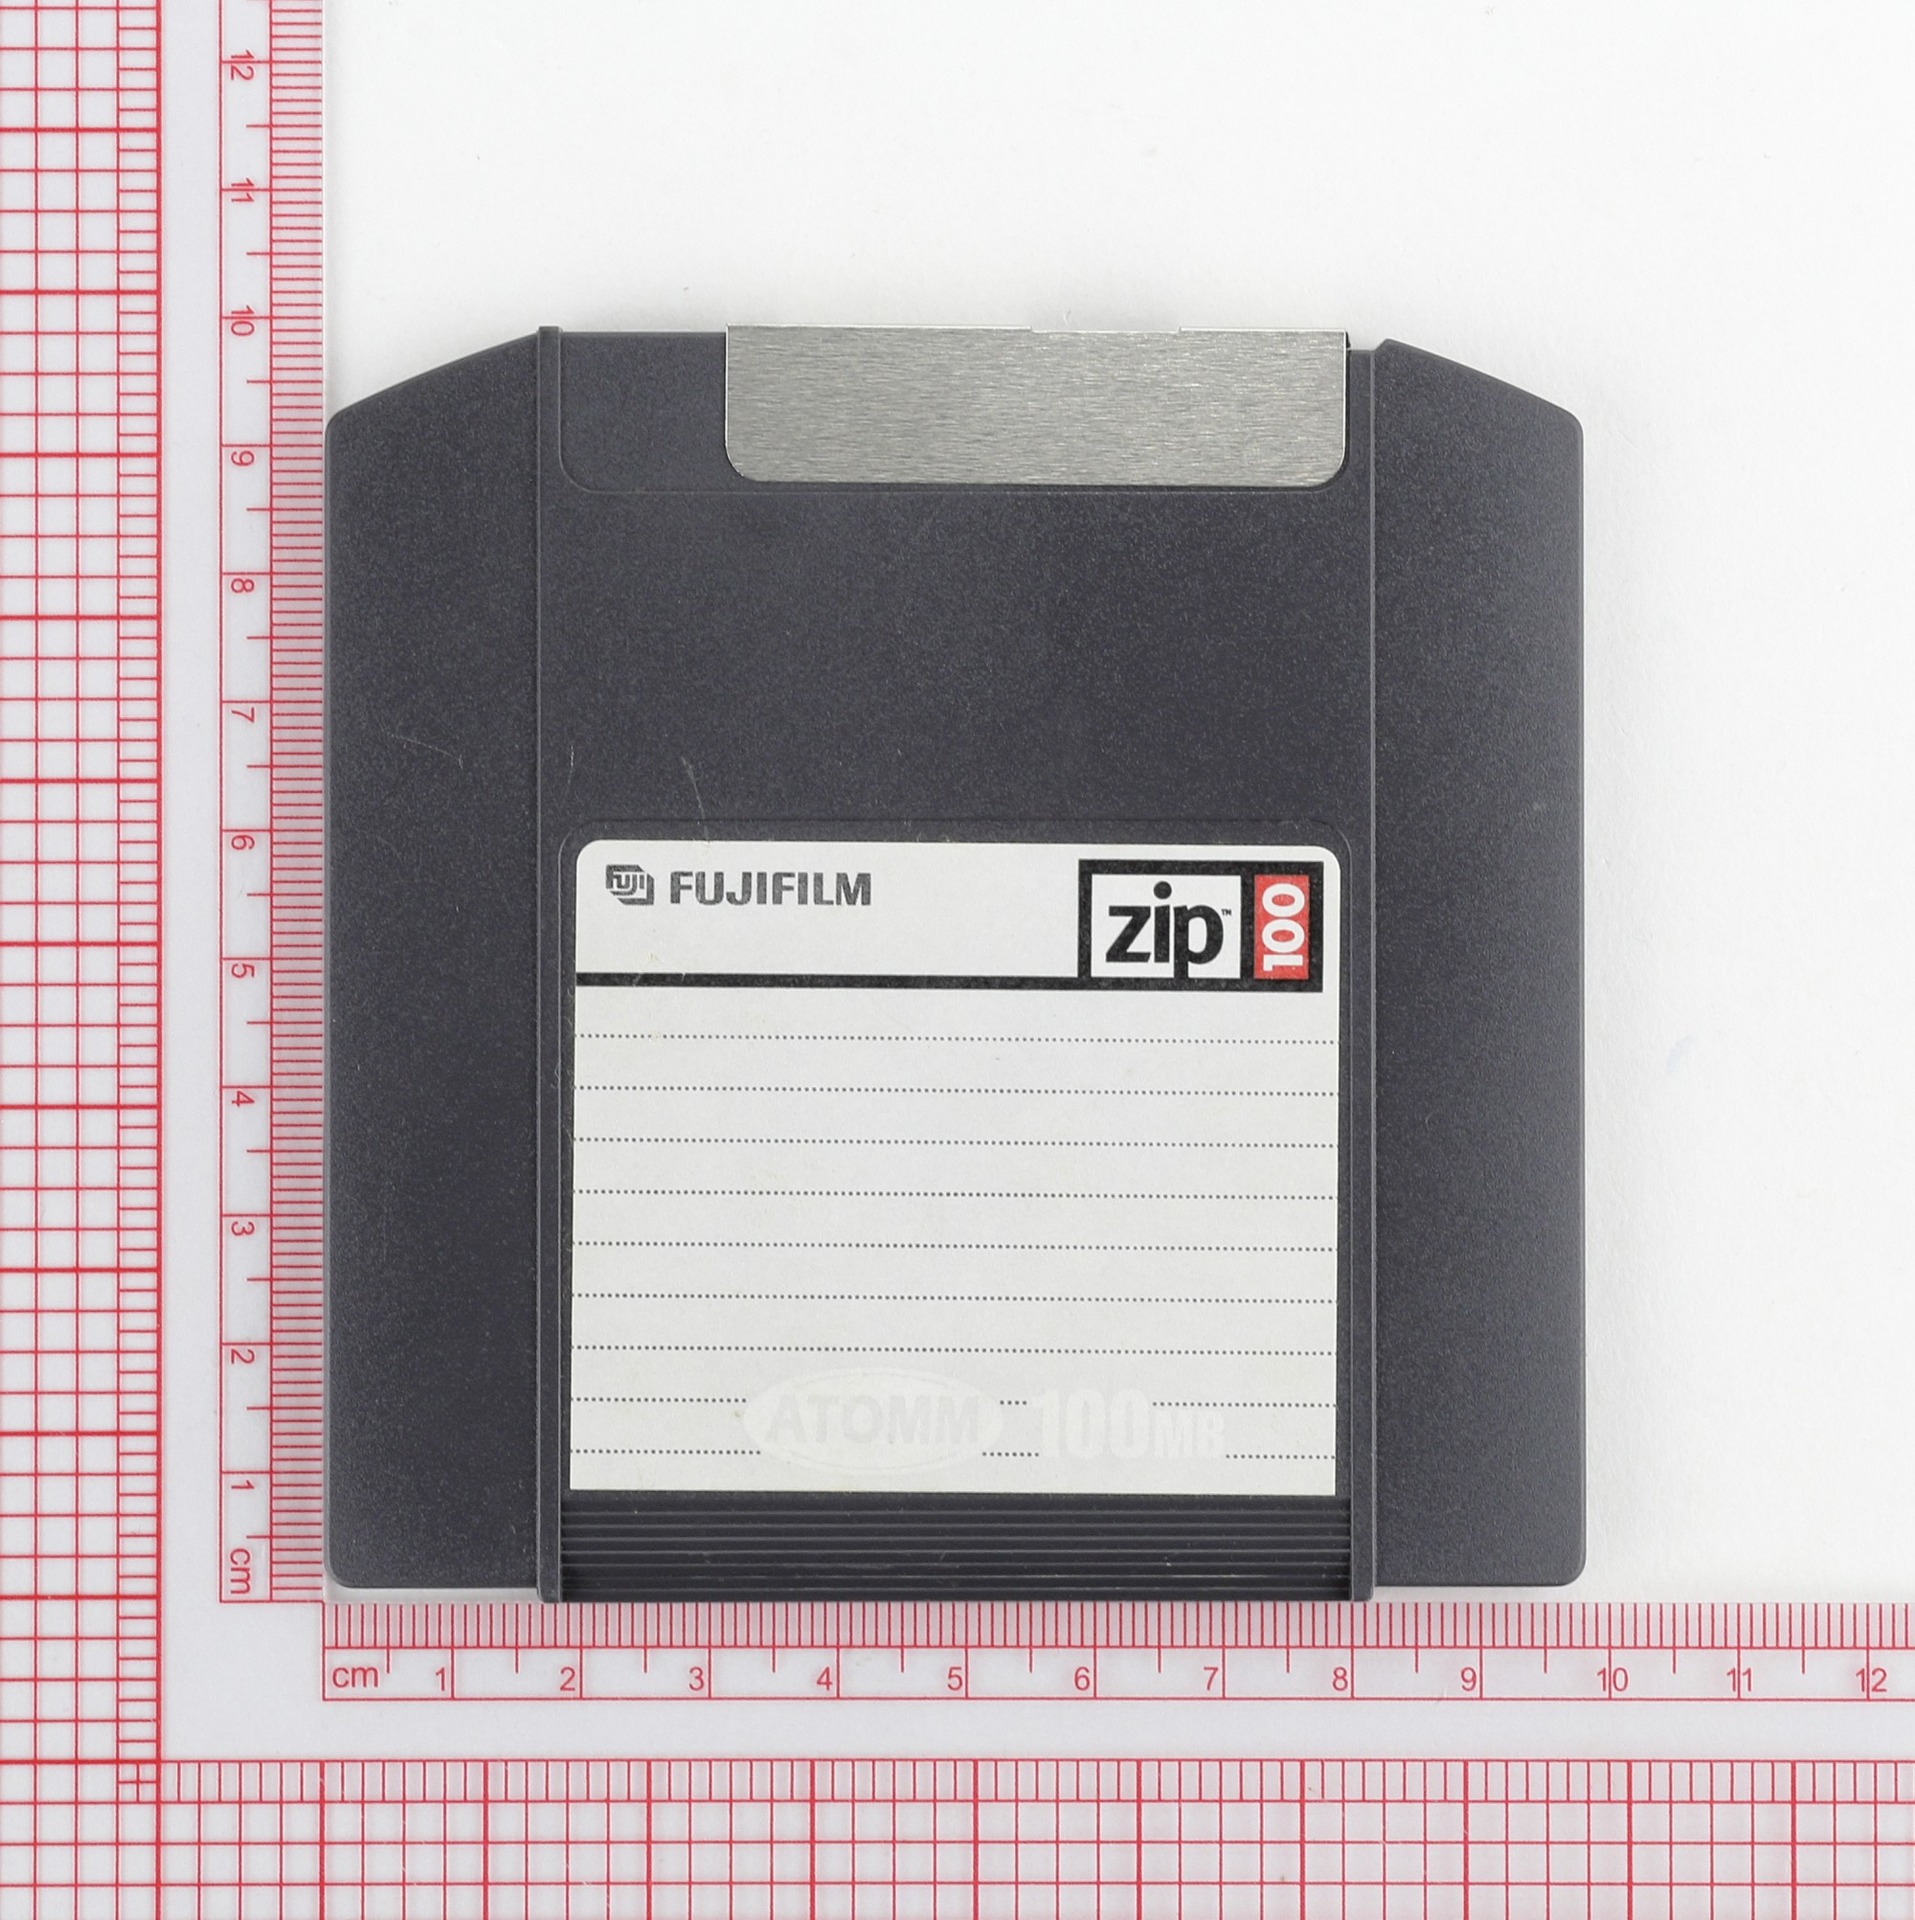 次世代フロッピーディスクとして有望視されていた「Zip」（100MB、1994